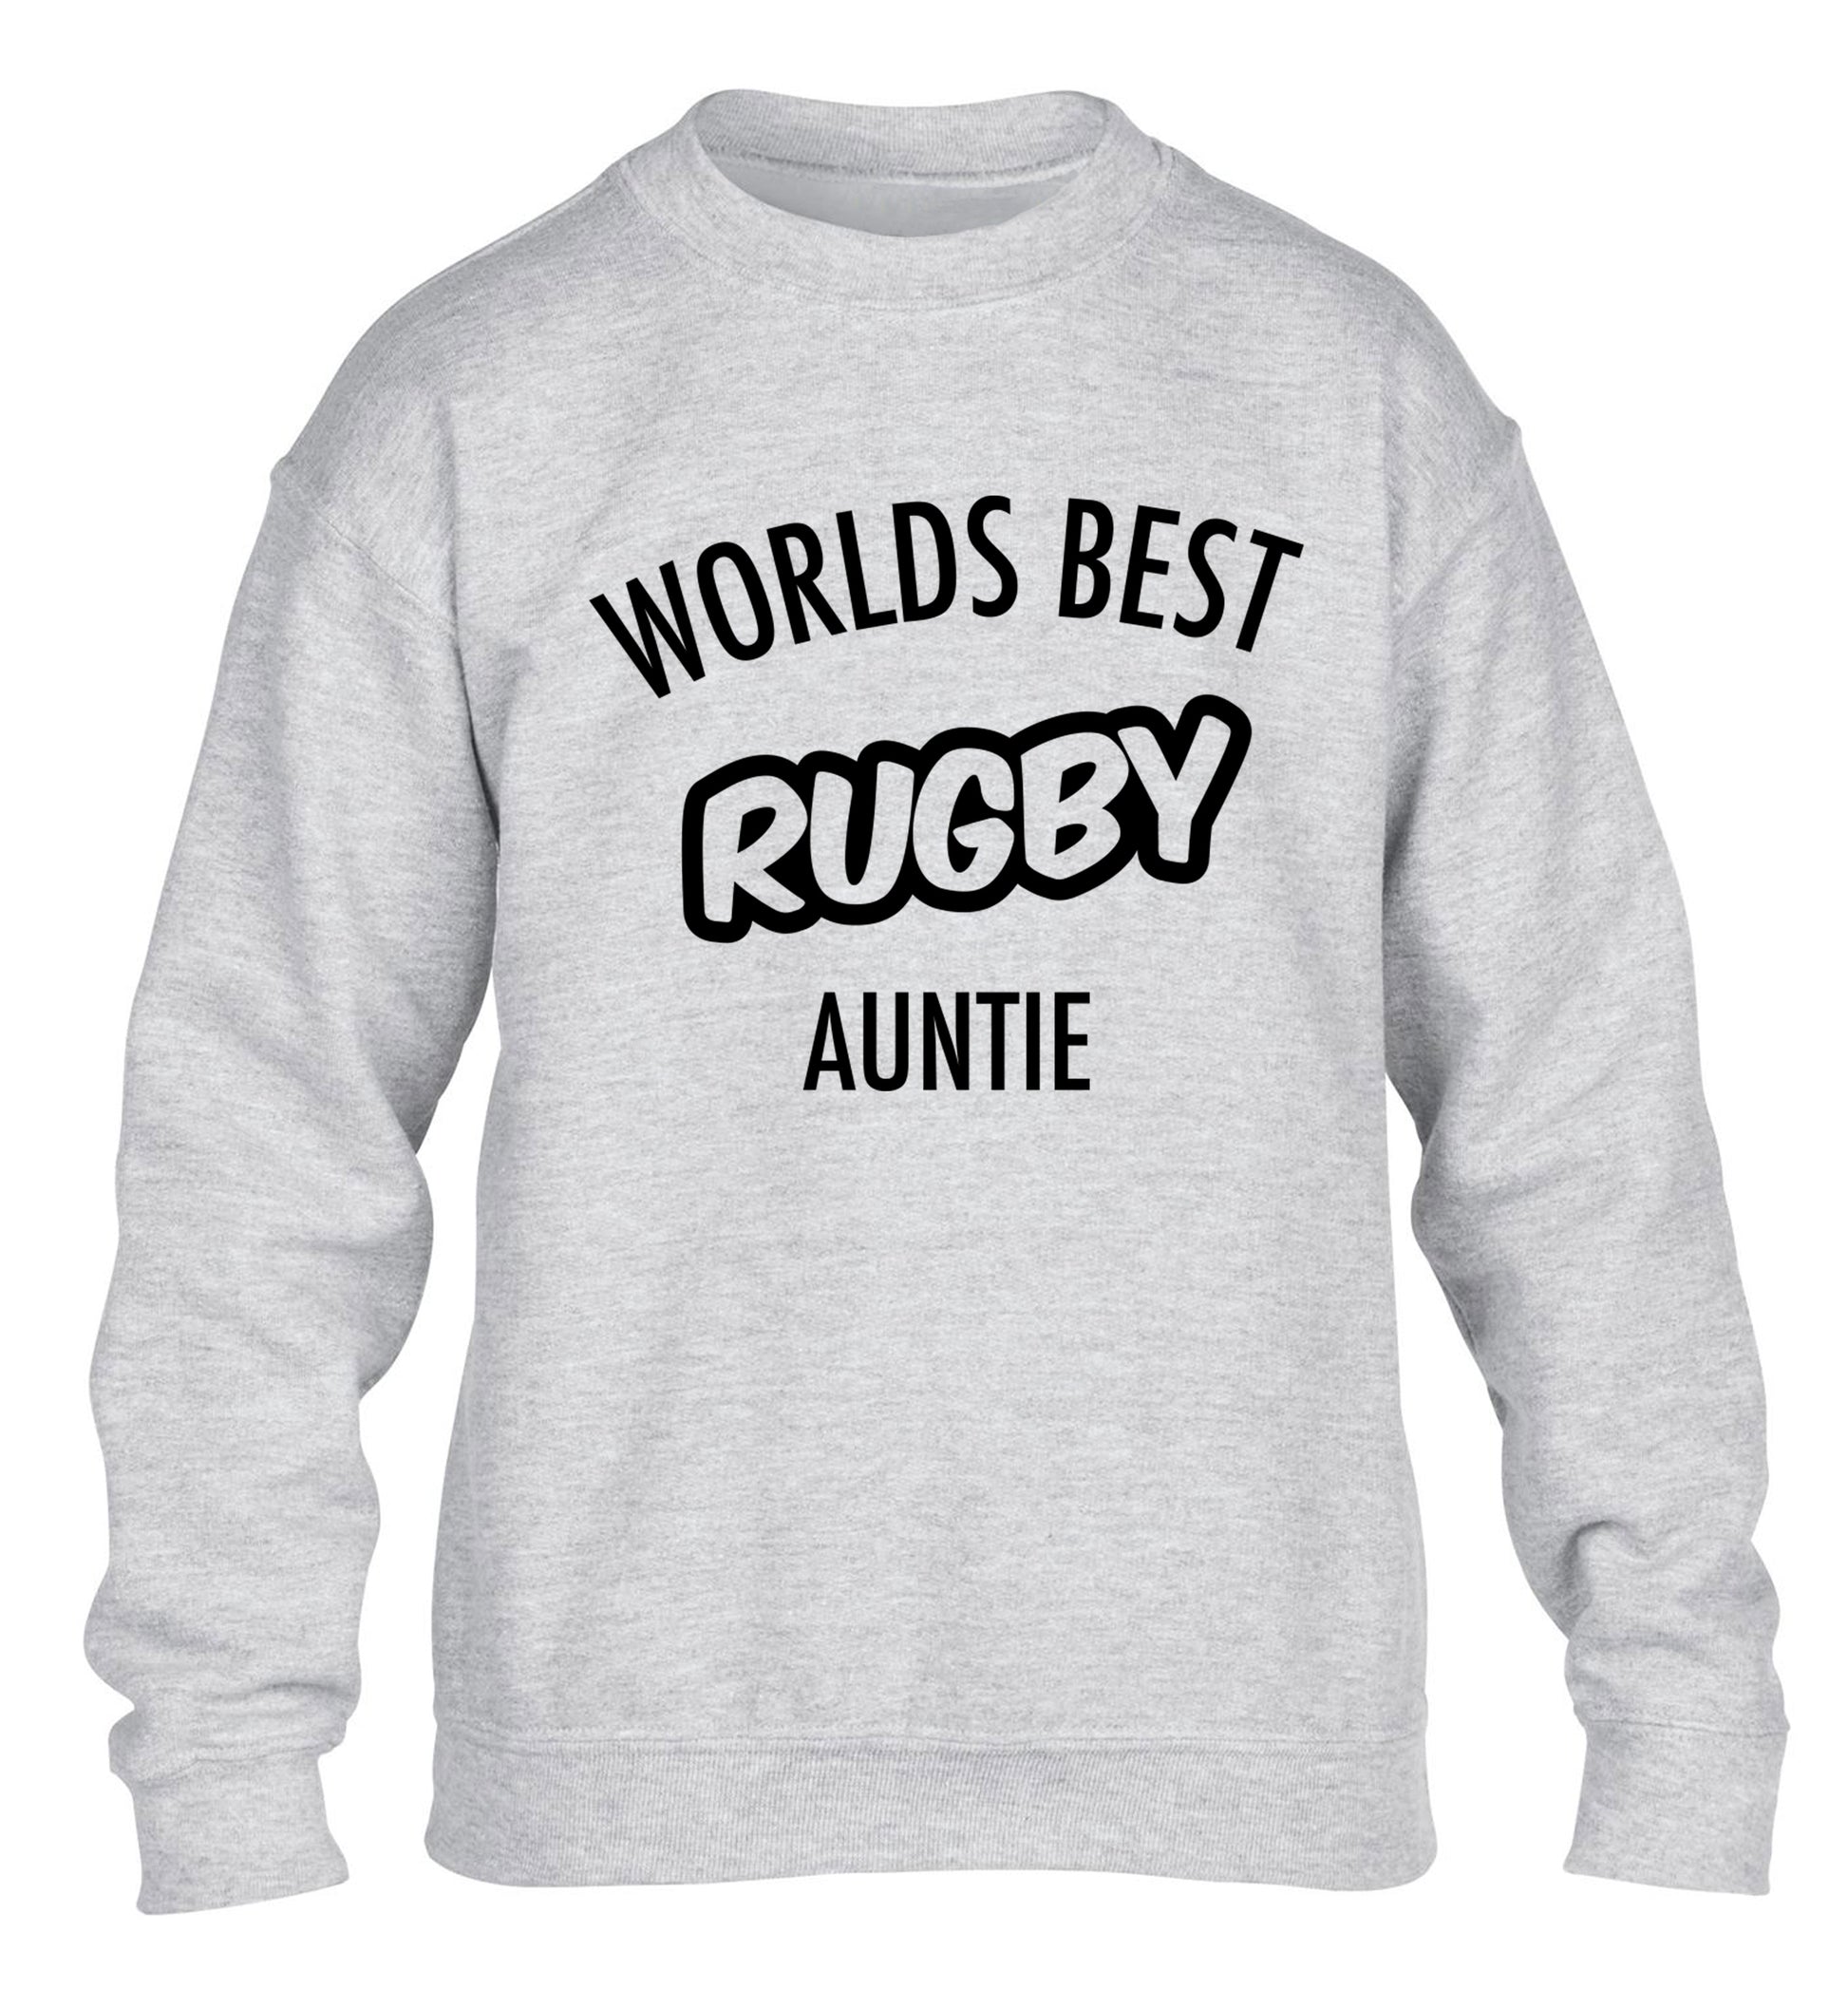 Worlds best rugby auntie children's grey sweater 12-13 Years